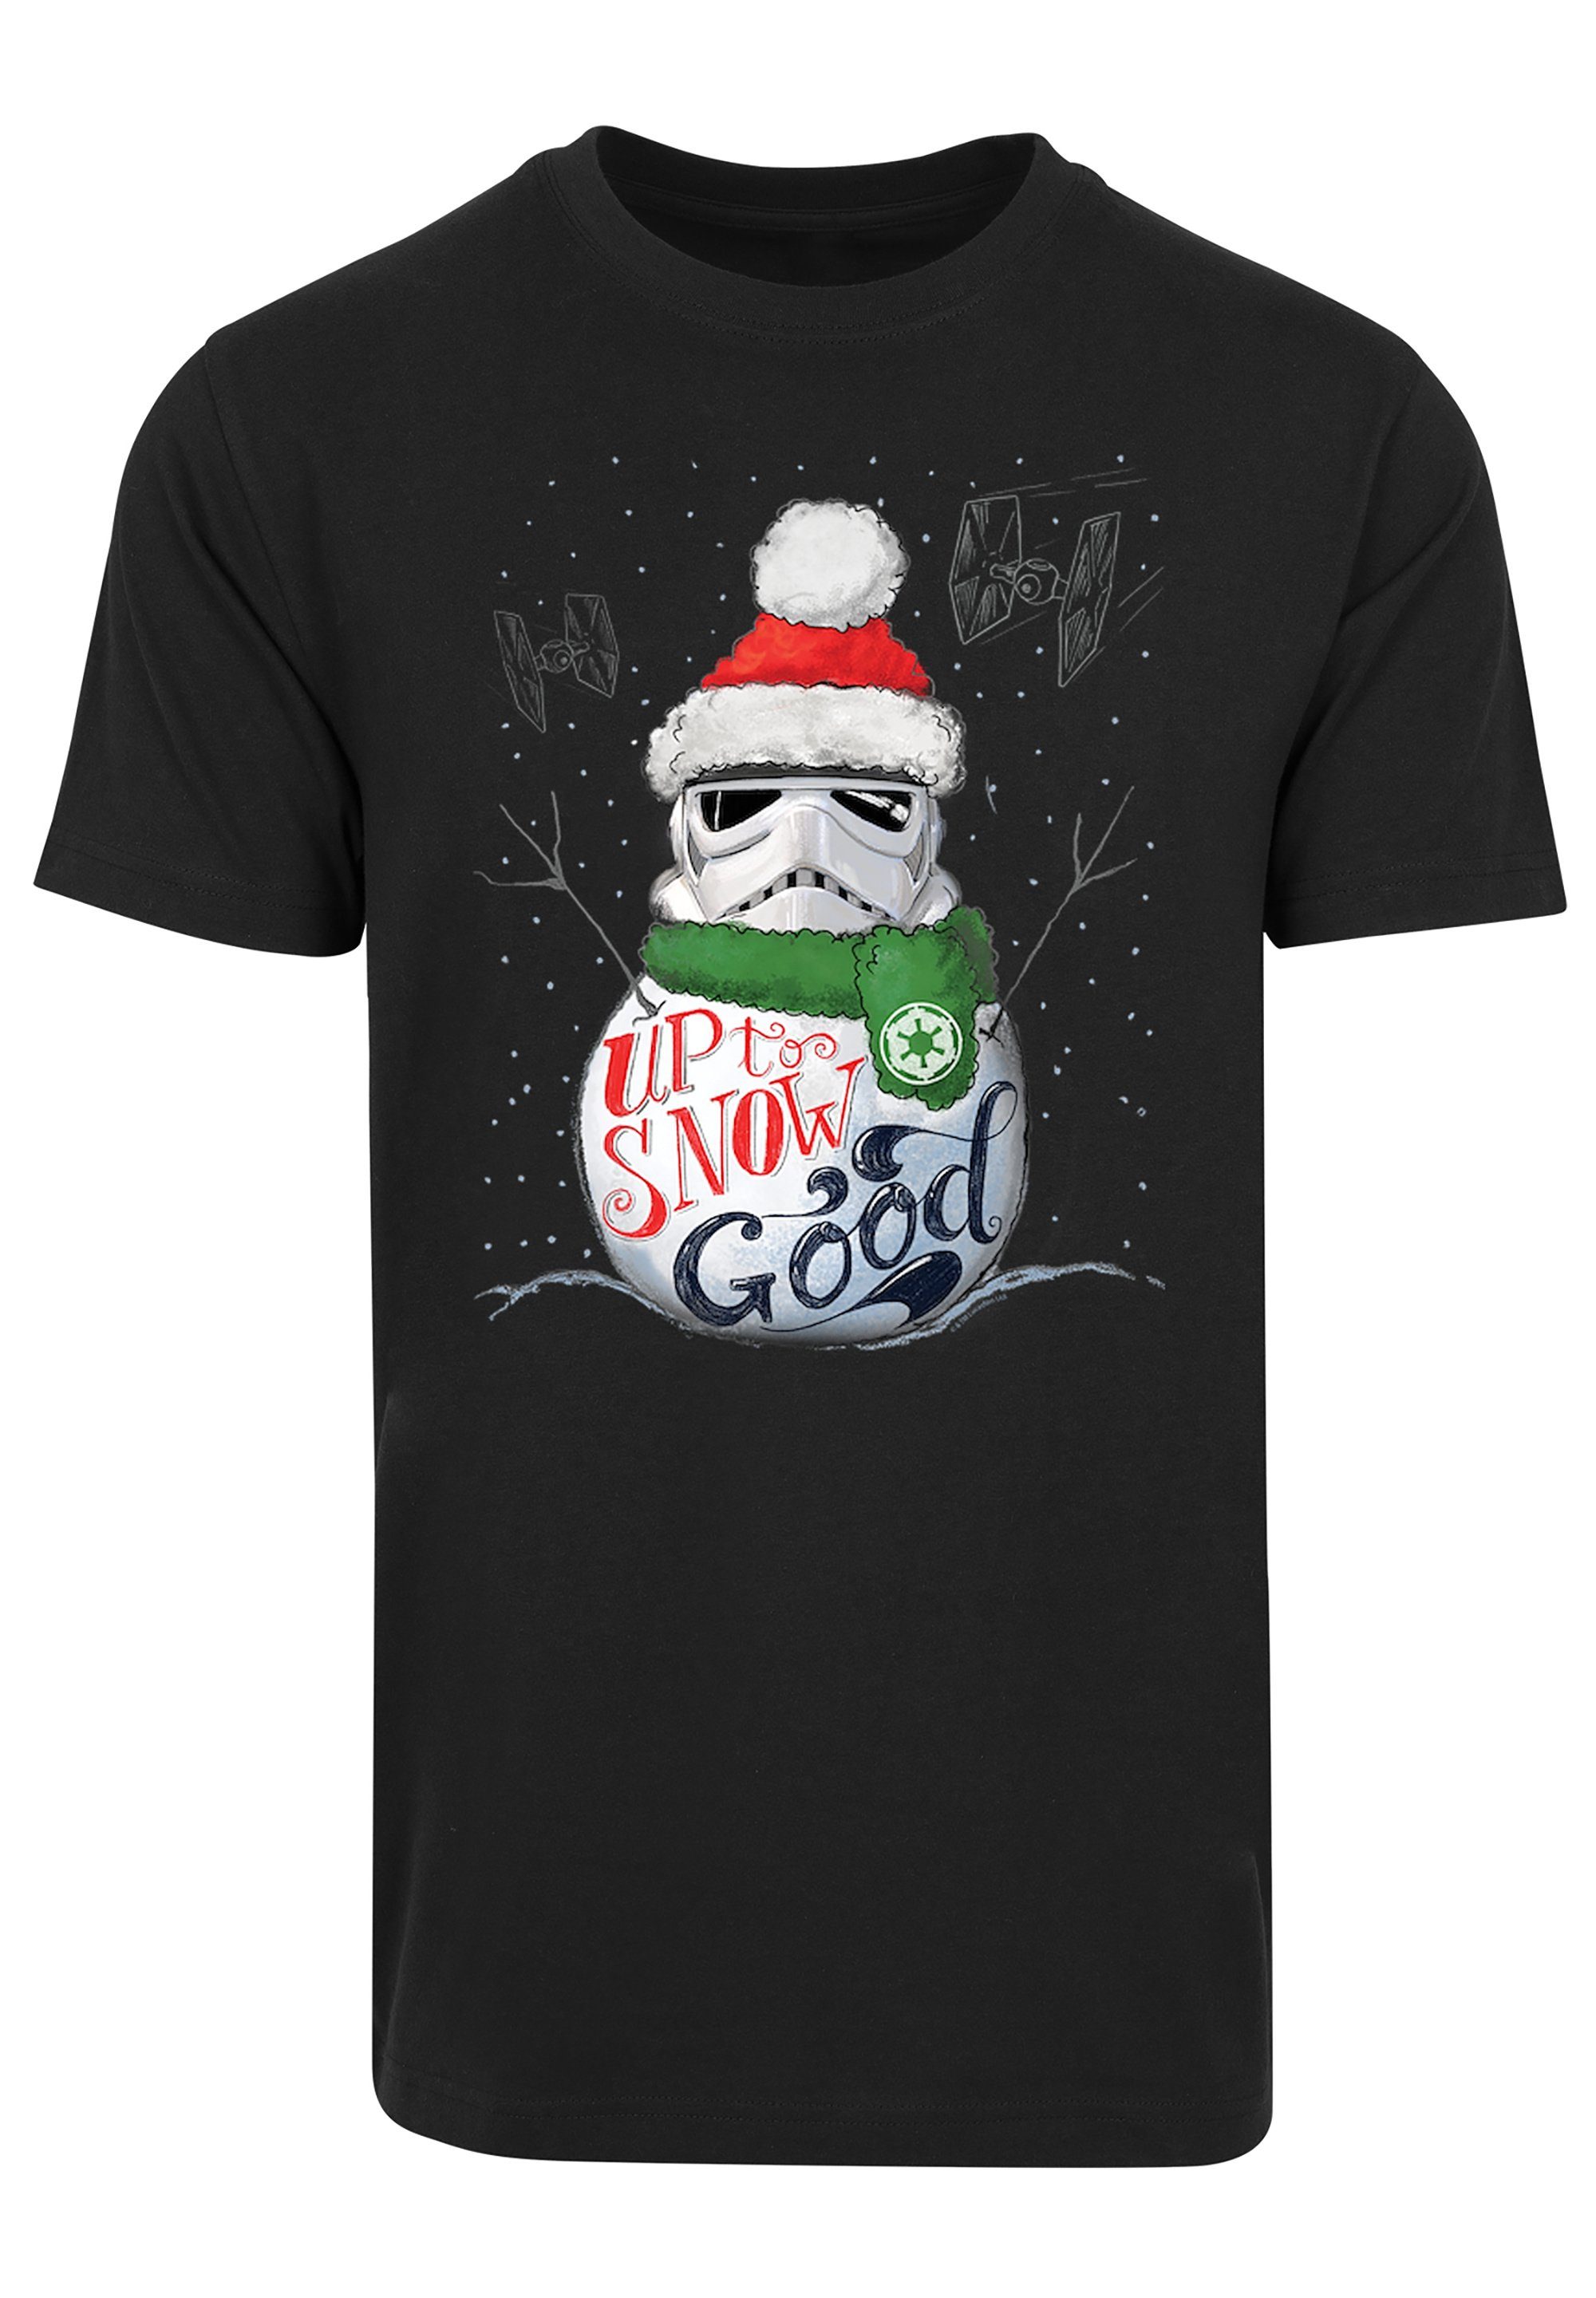 F4NT4STIC T-Shirt Star Wars Up schwarz To Krieg Good Stromtrooper Sterne Snow Print der